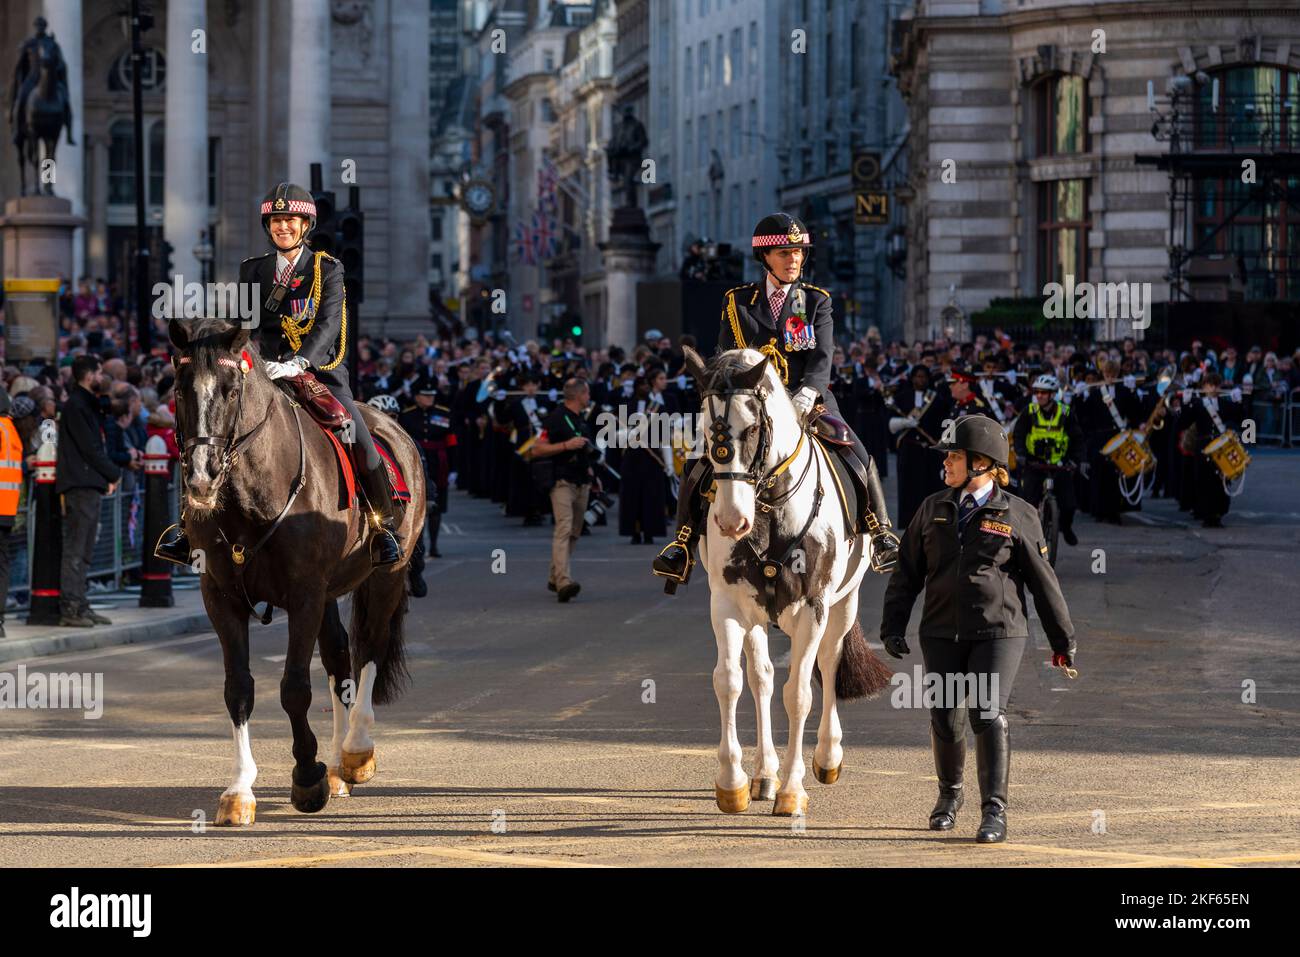 Angela McLaren (White Horse)-KOMMISSARIN, Polizei DER STADT LONDON, bei der Lord Mayor's Show Parade in der City of London, Großbritannien Stockfoto